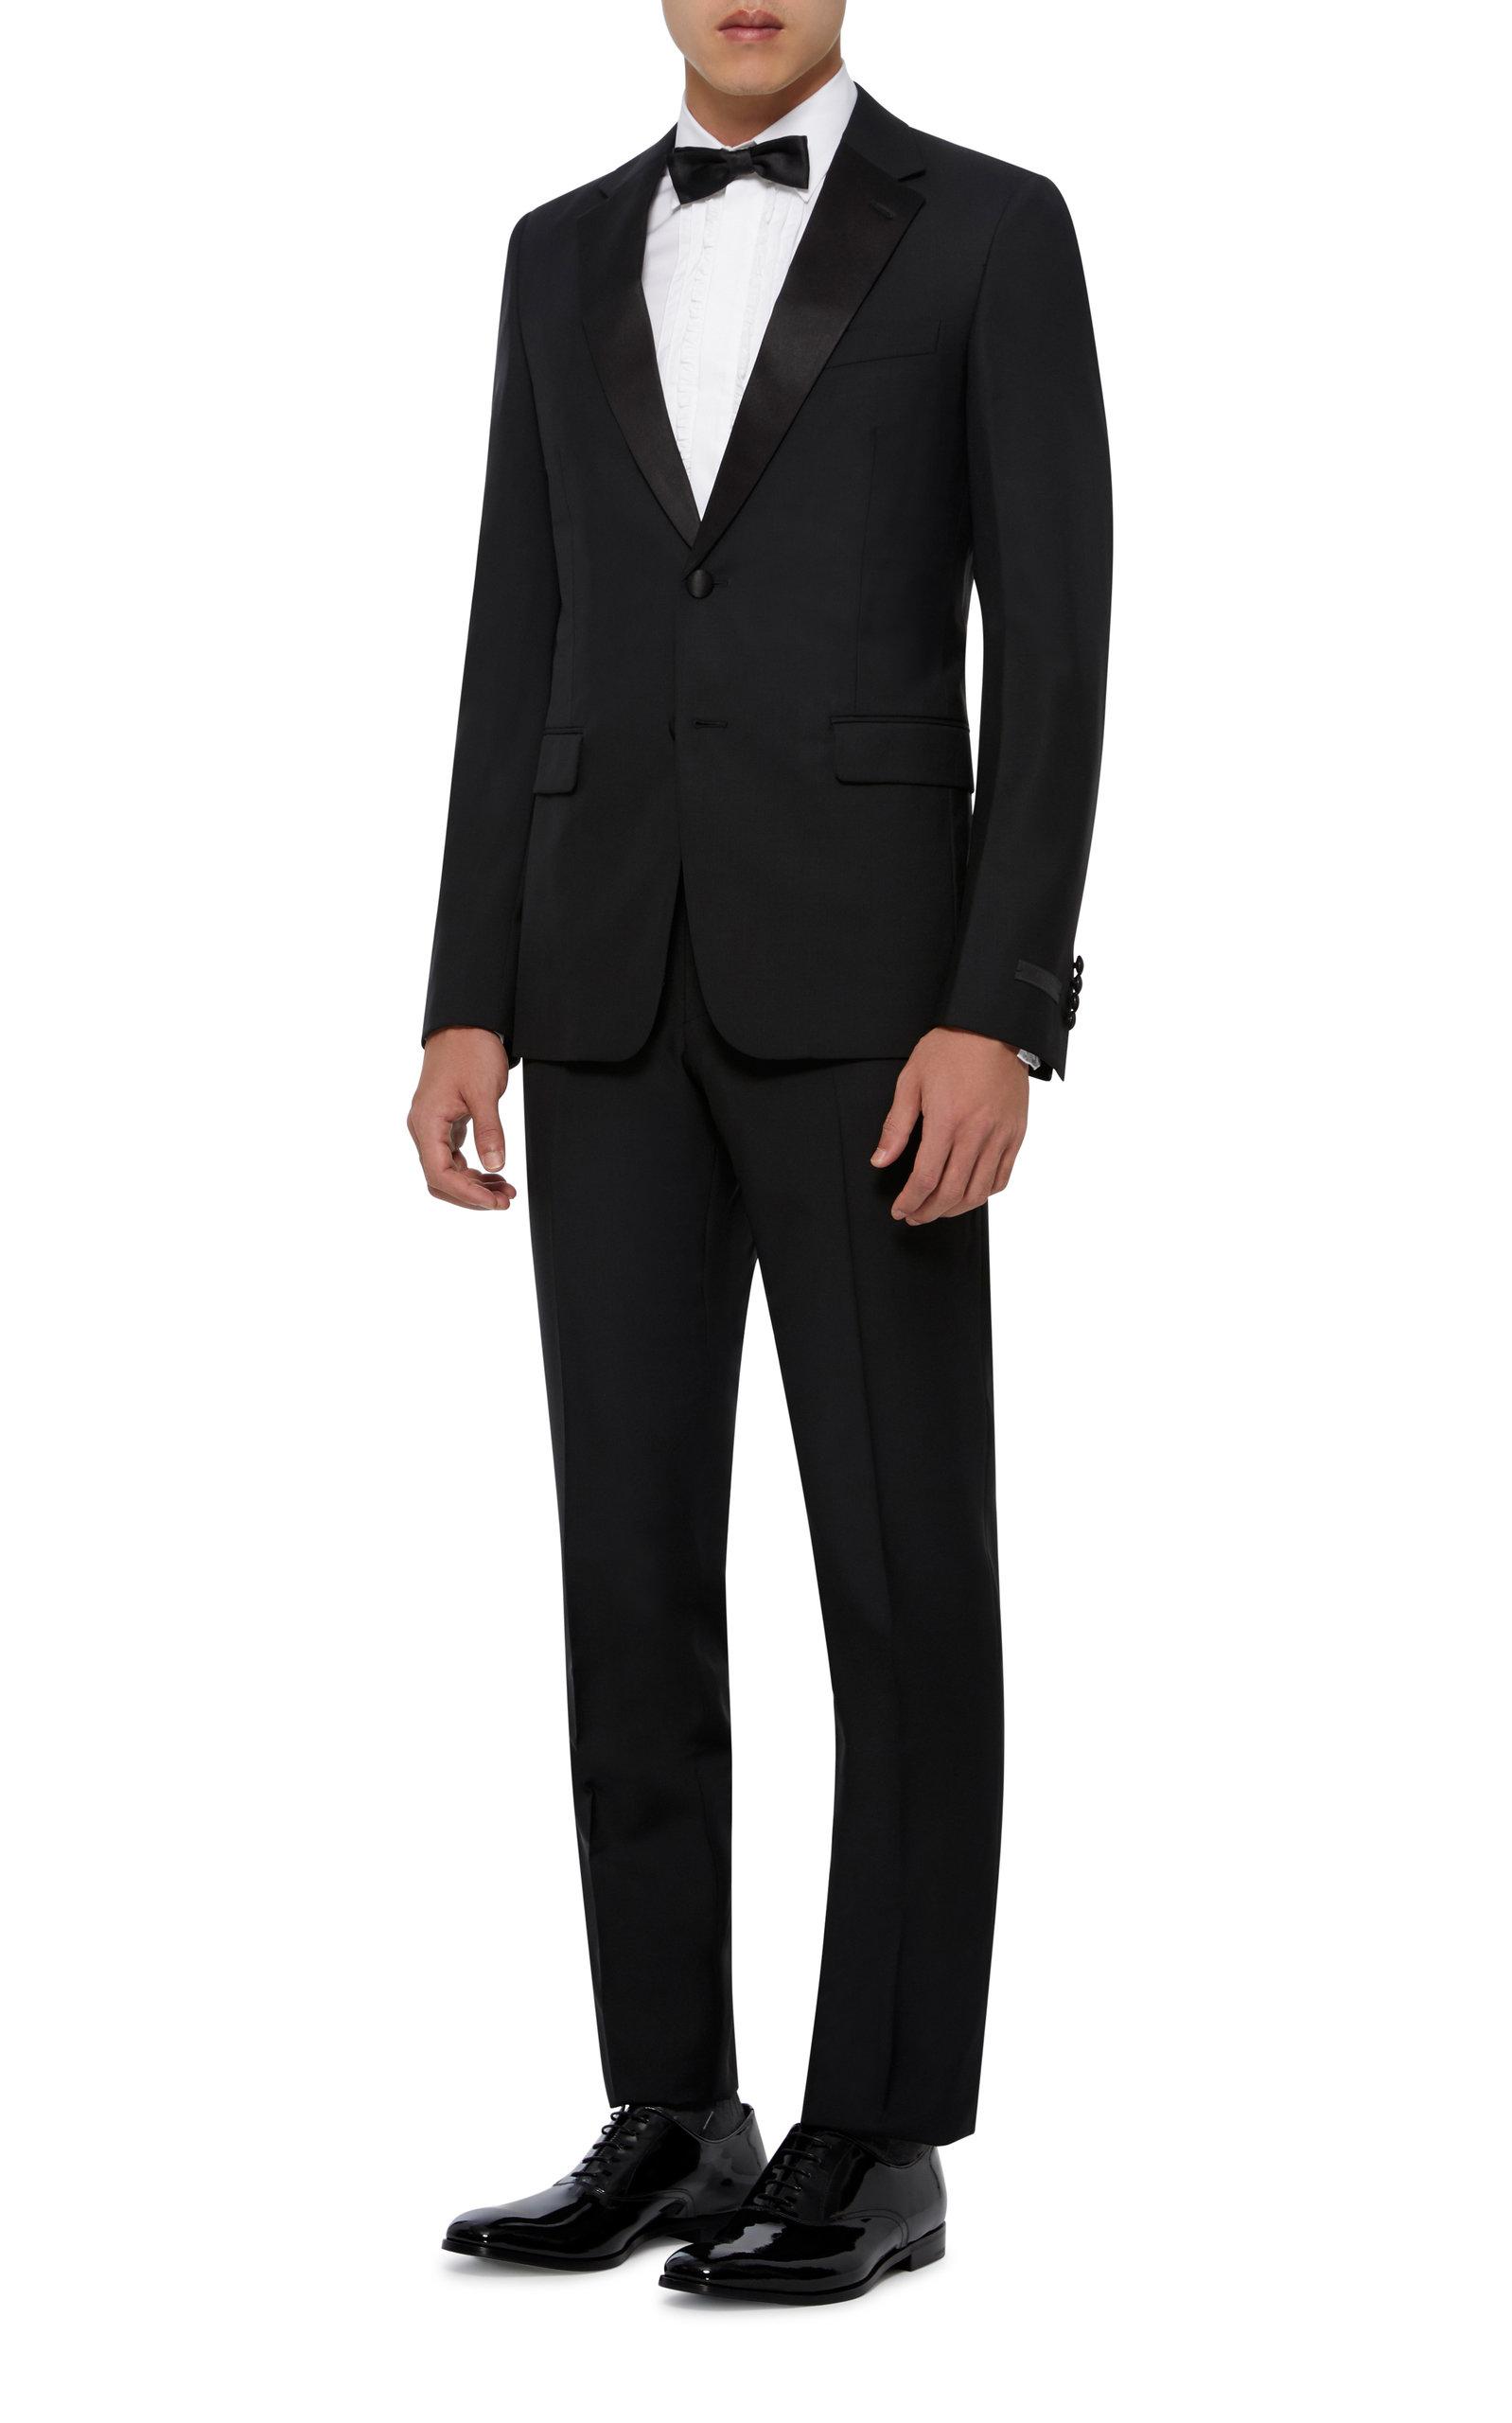 Prada Satin-trimmed Wool-blend Tuxedo in Black for Men - Lyst